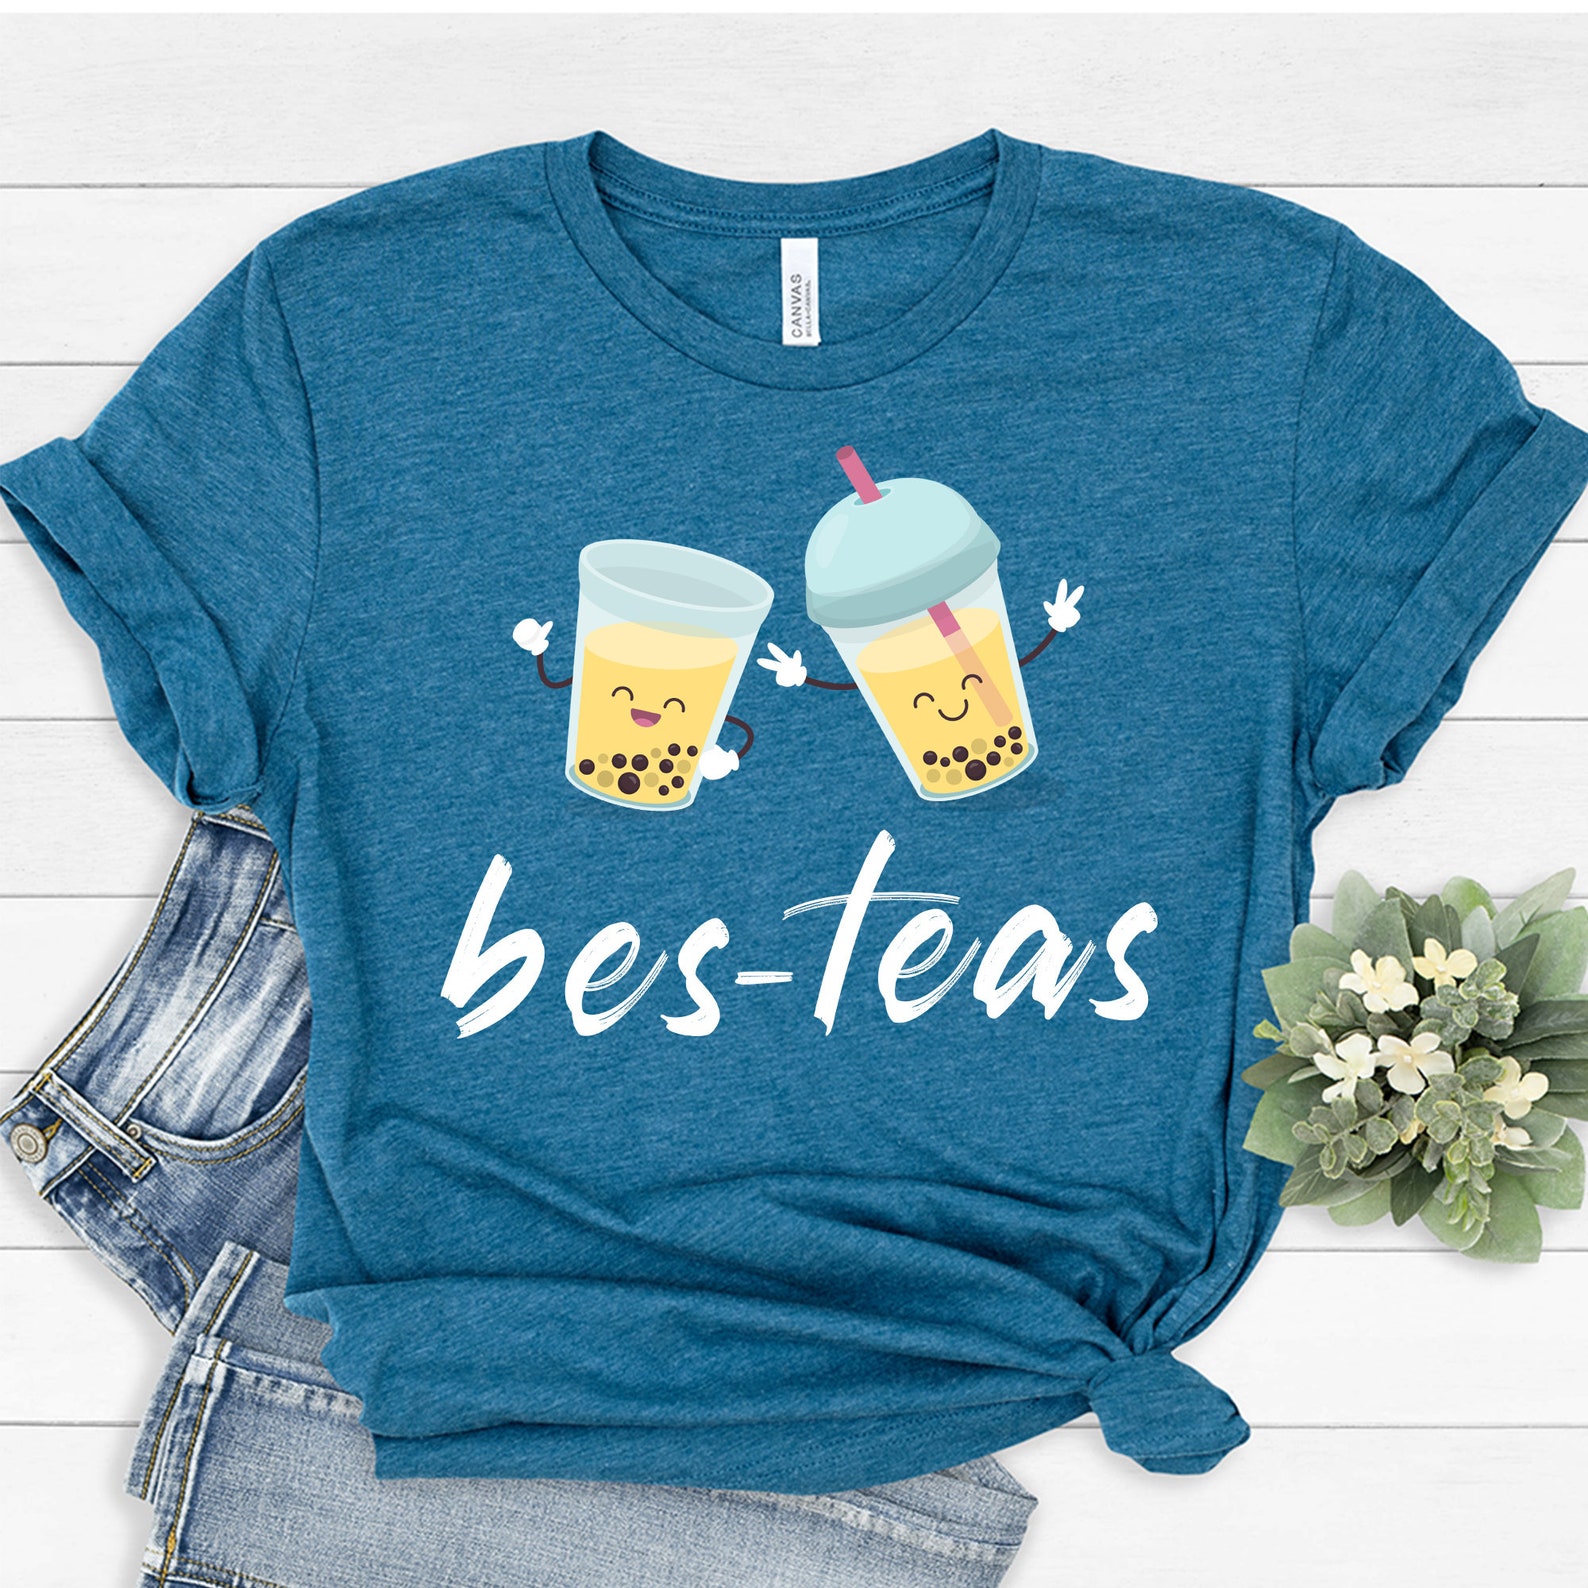 Bes-teas T-shirt Cute Boba Bes Tea Best Friend Shirt Gift - Etsy